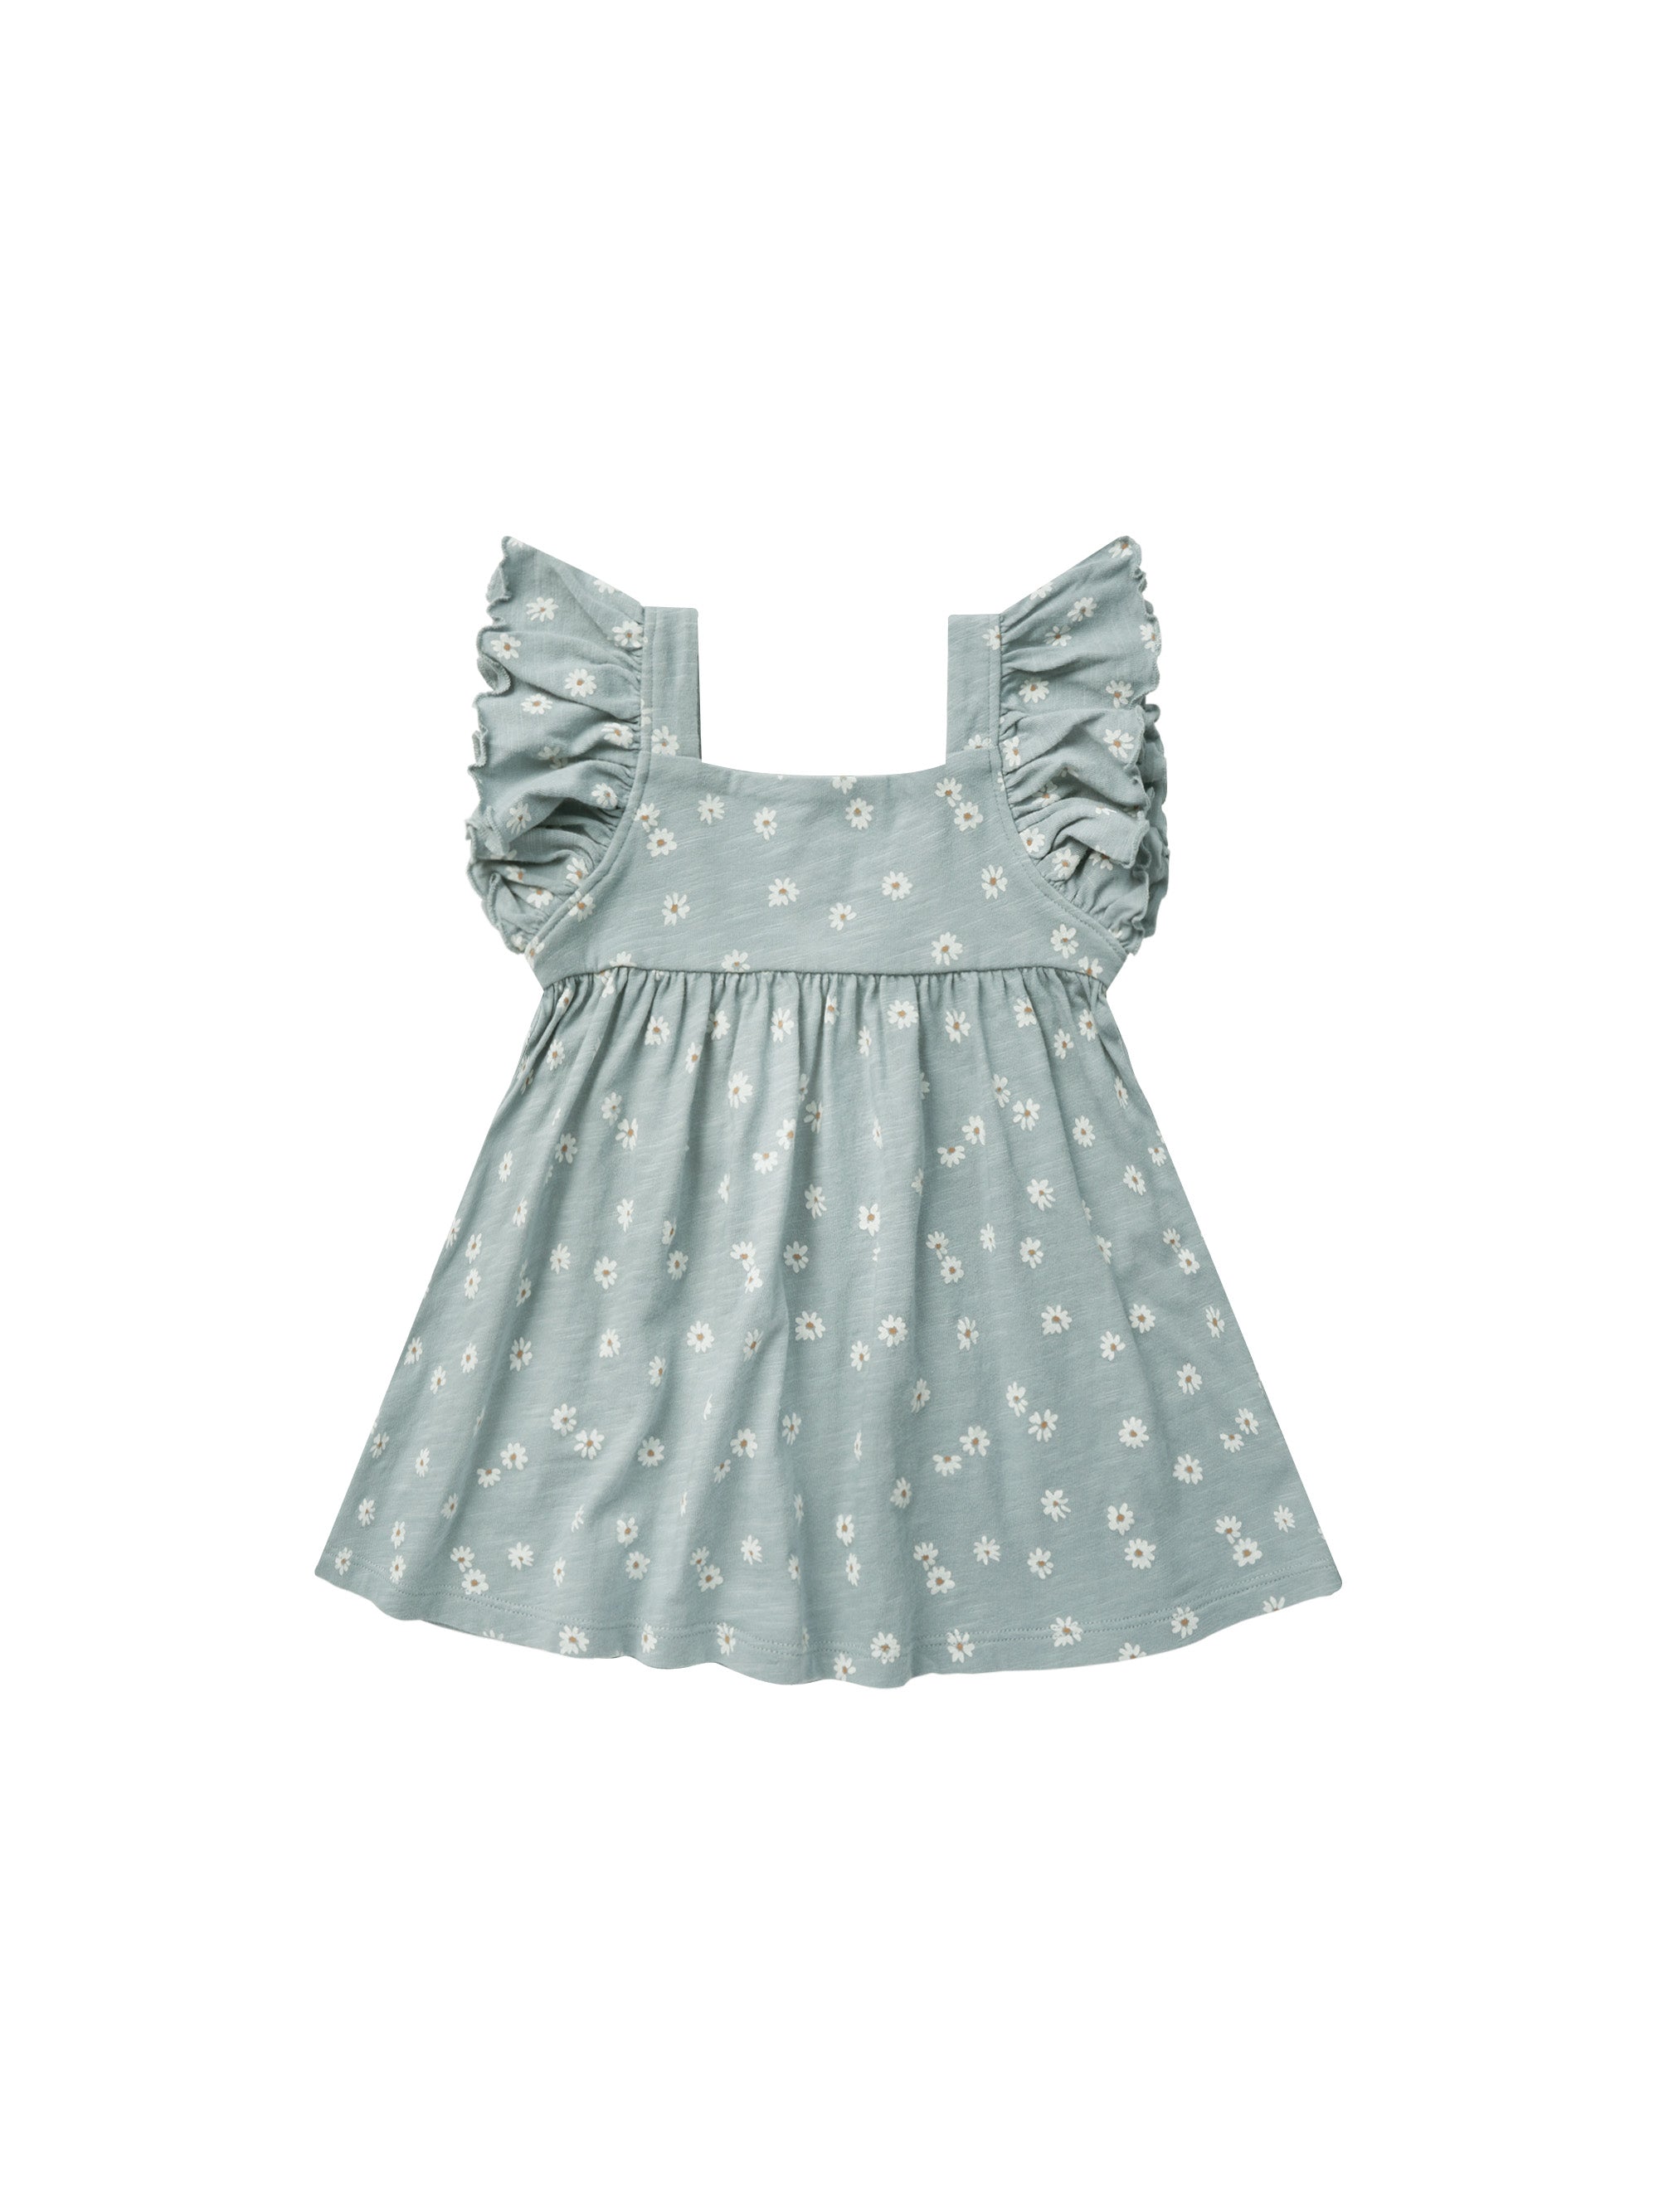 Mariposa Dress - Blue Daisy - Twinkle Twinkle Little One